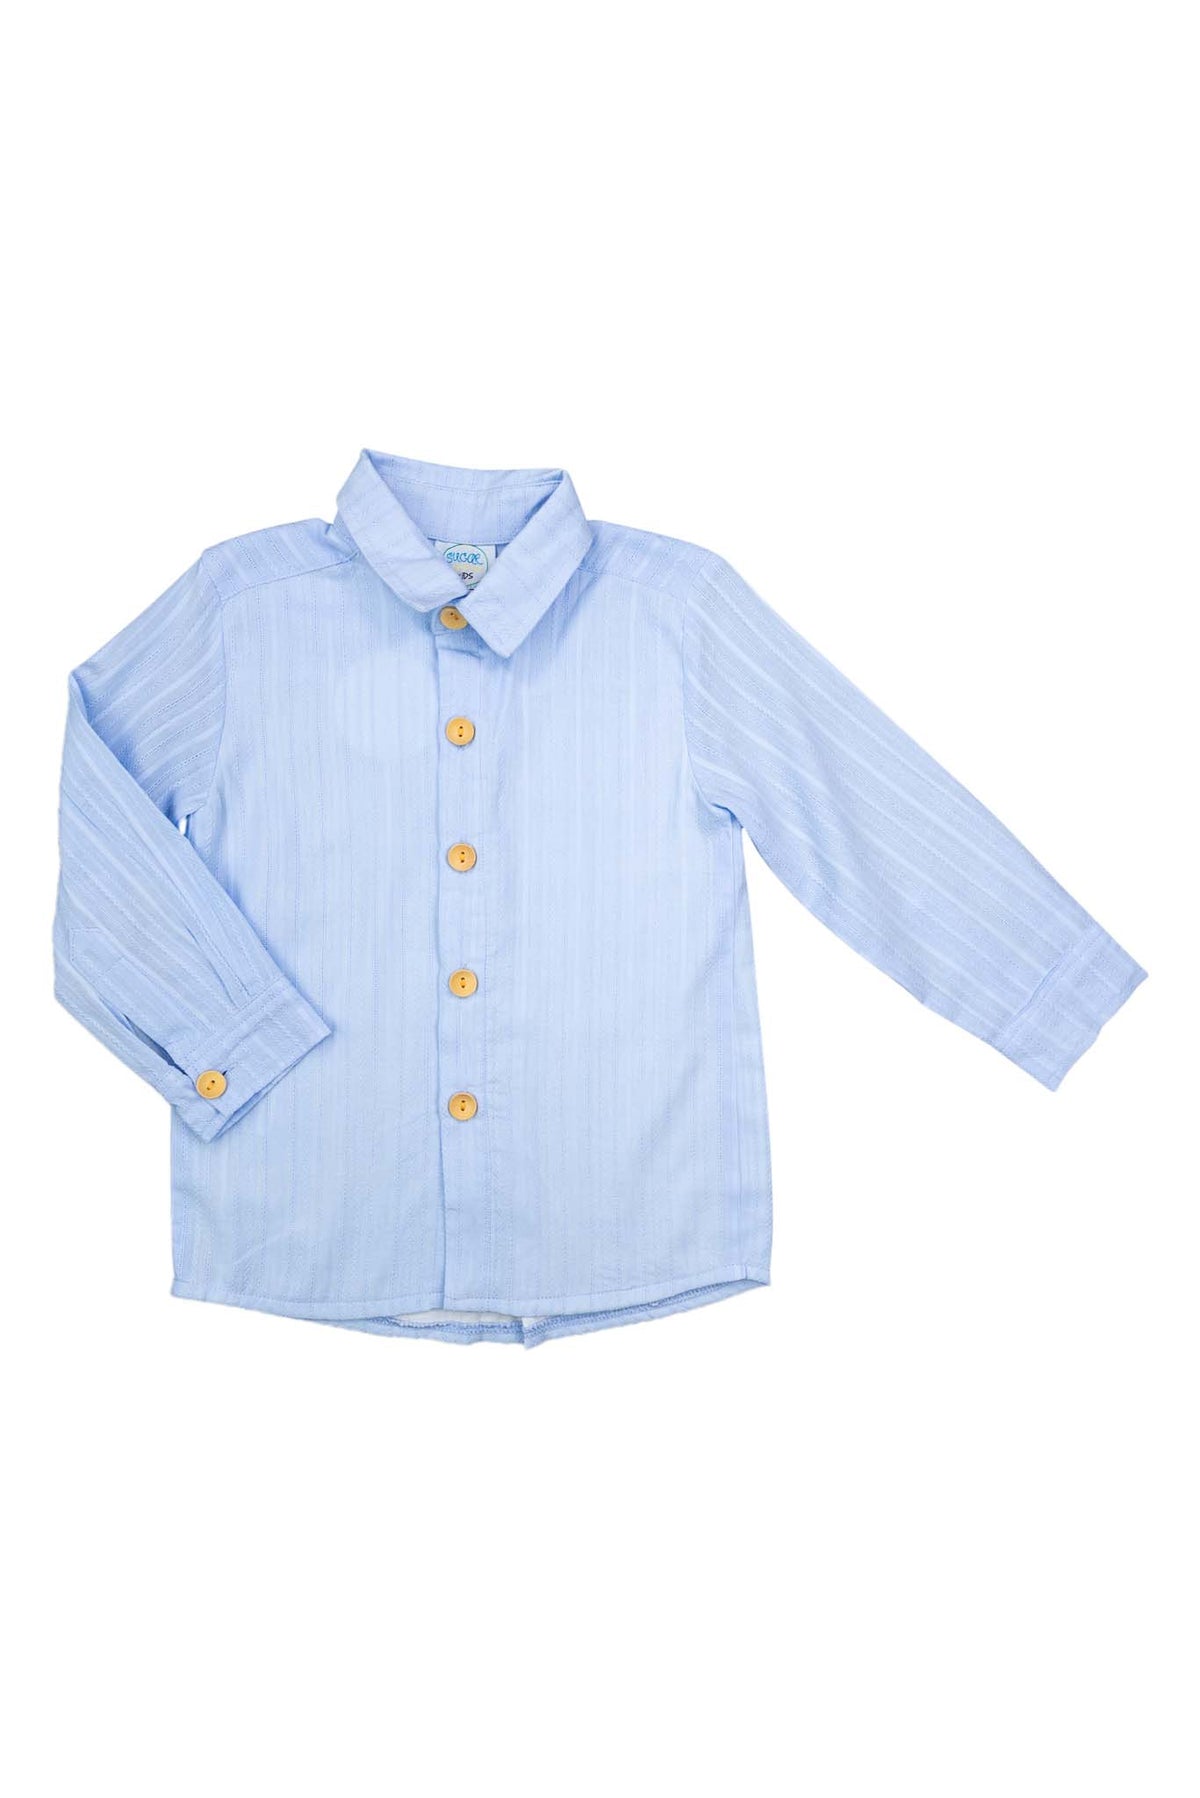 Boys Blue Linen Shirt Only